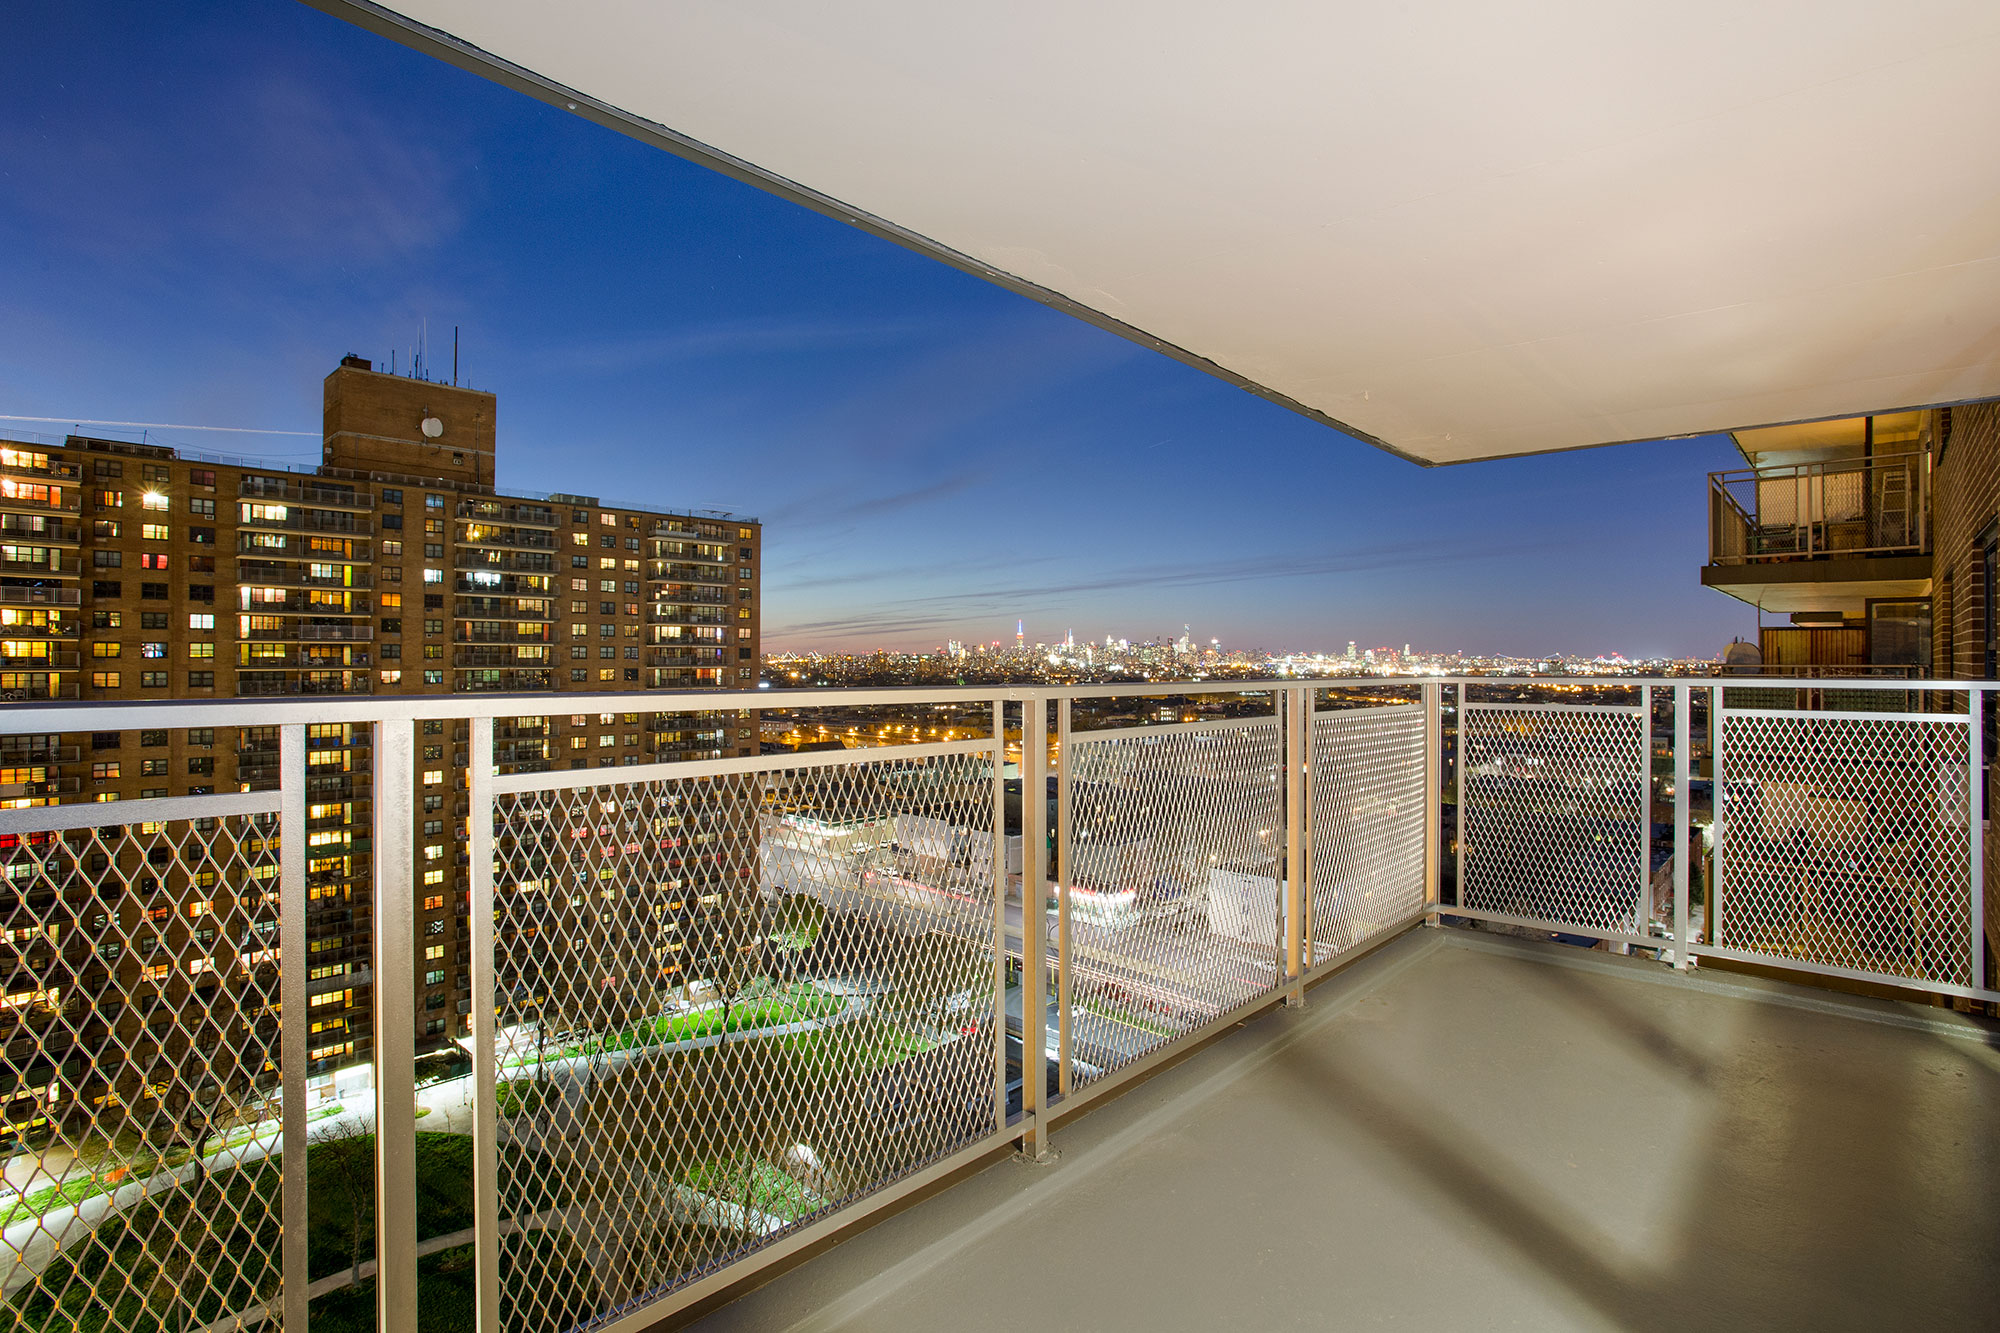 A photo of a Balcony at night in Atlantic Plaza Towers, Brooklyn, NY